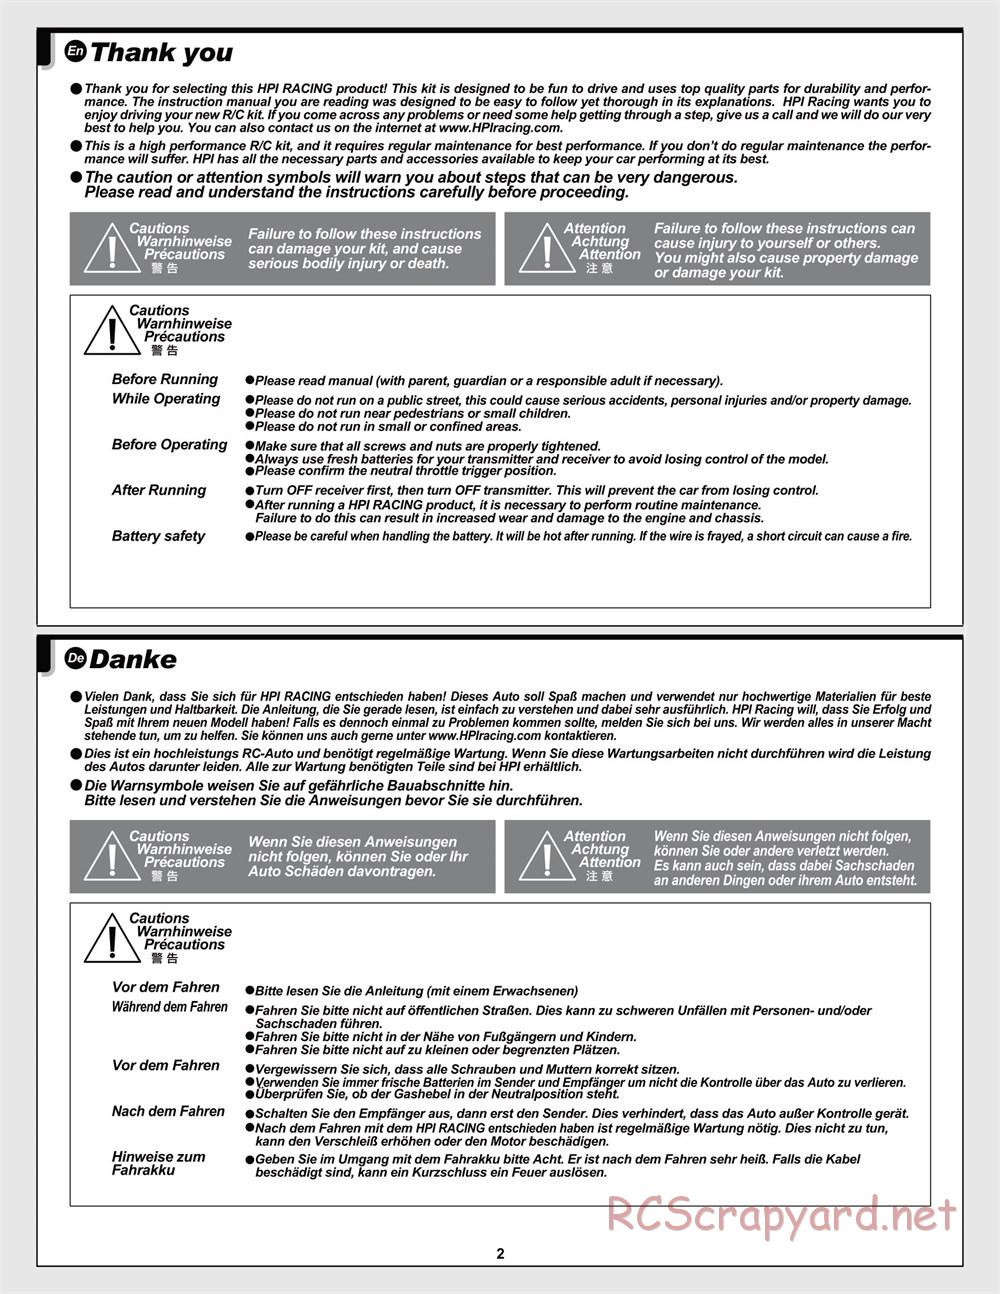 HPI - Jumpshot MT Flux - Manual - Page 2